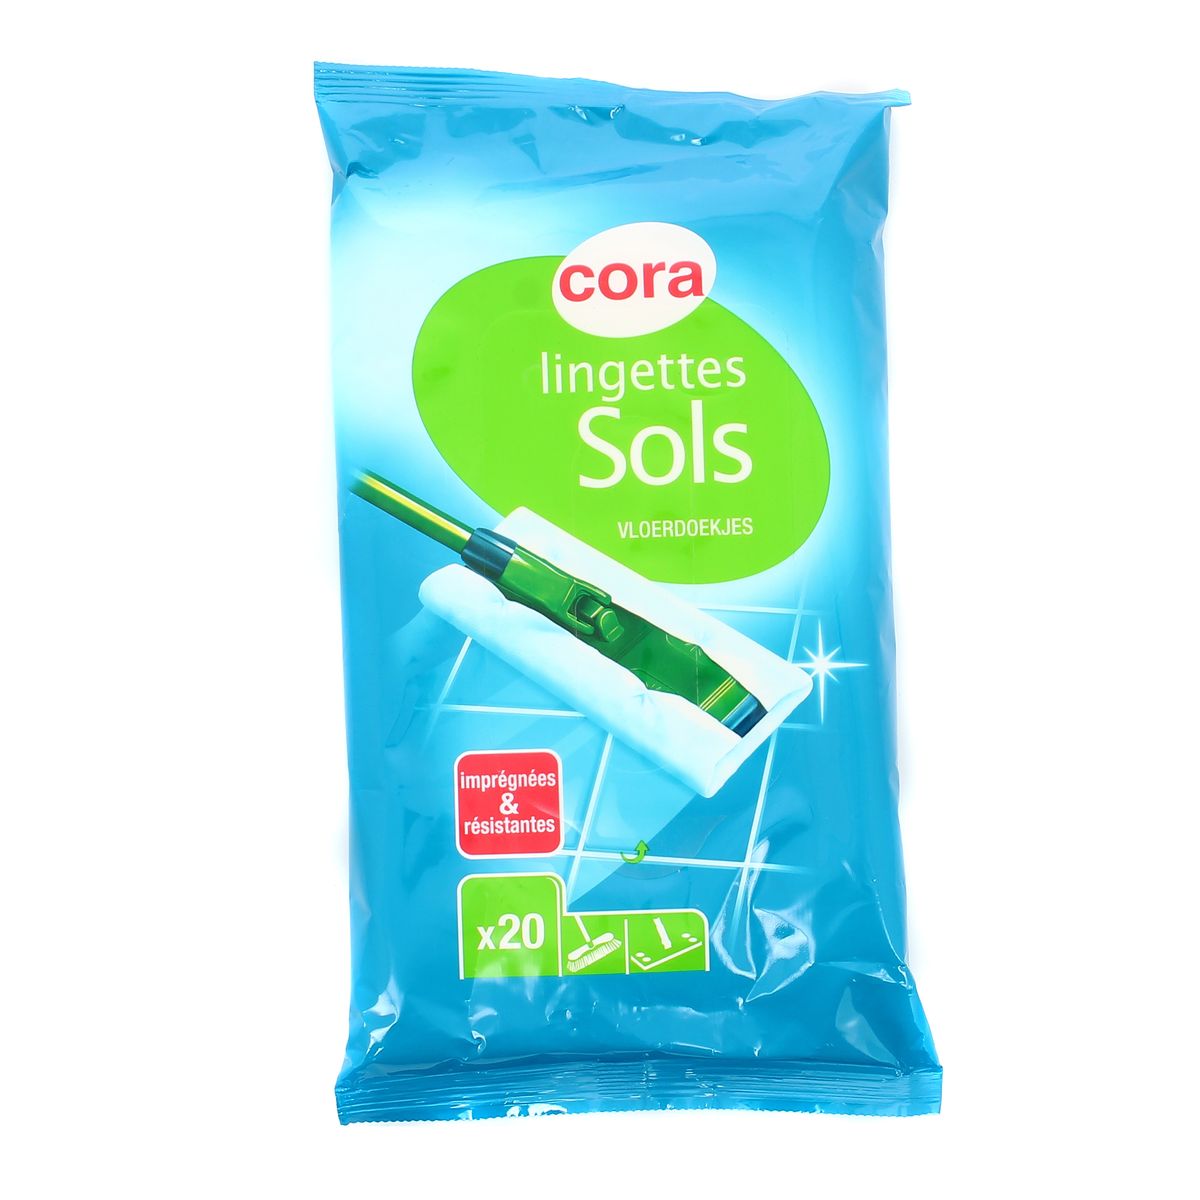 Cora lingettes nettoyantes sols recharge x20